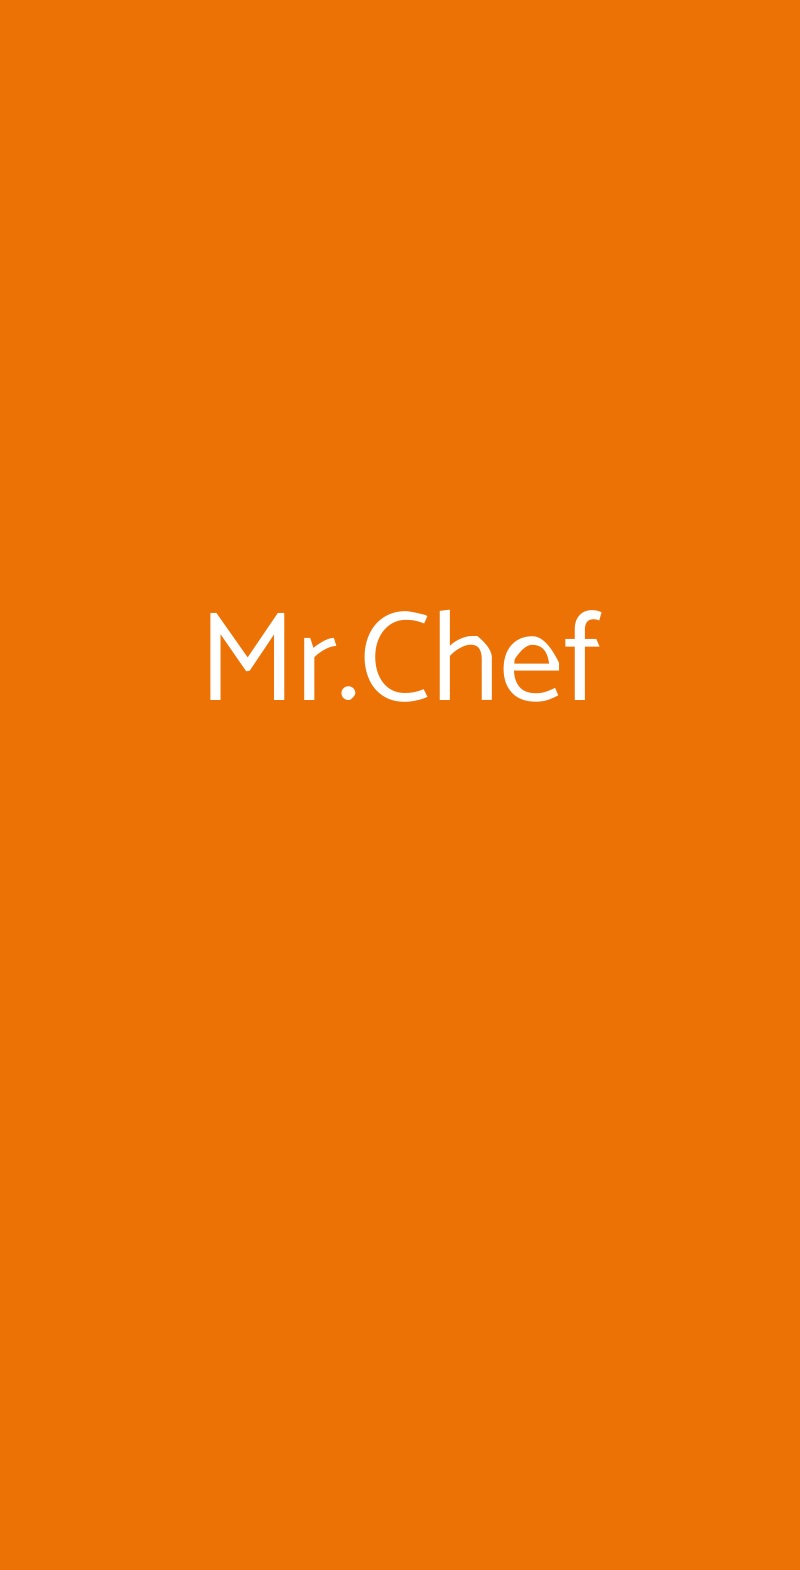 Mr.Chef Casoria menù 1 pagina